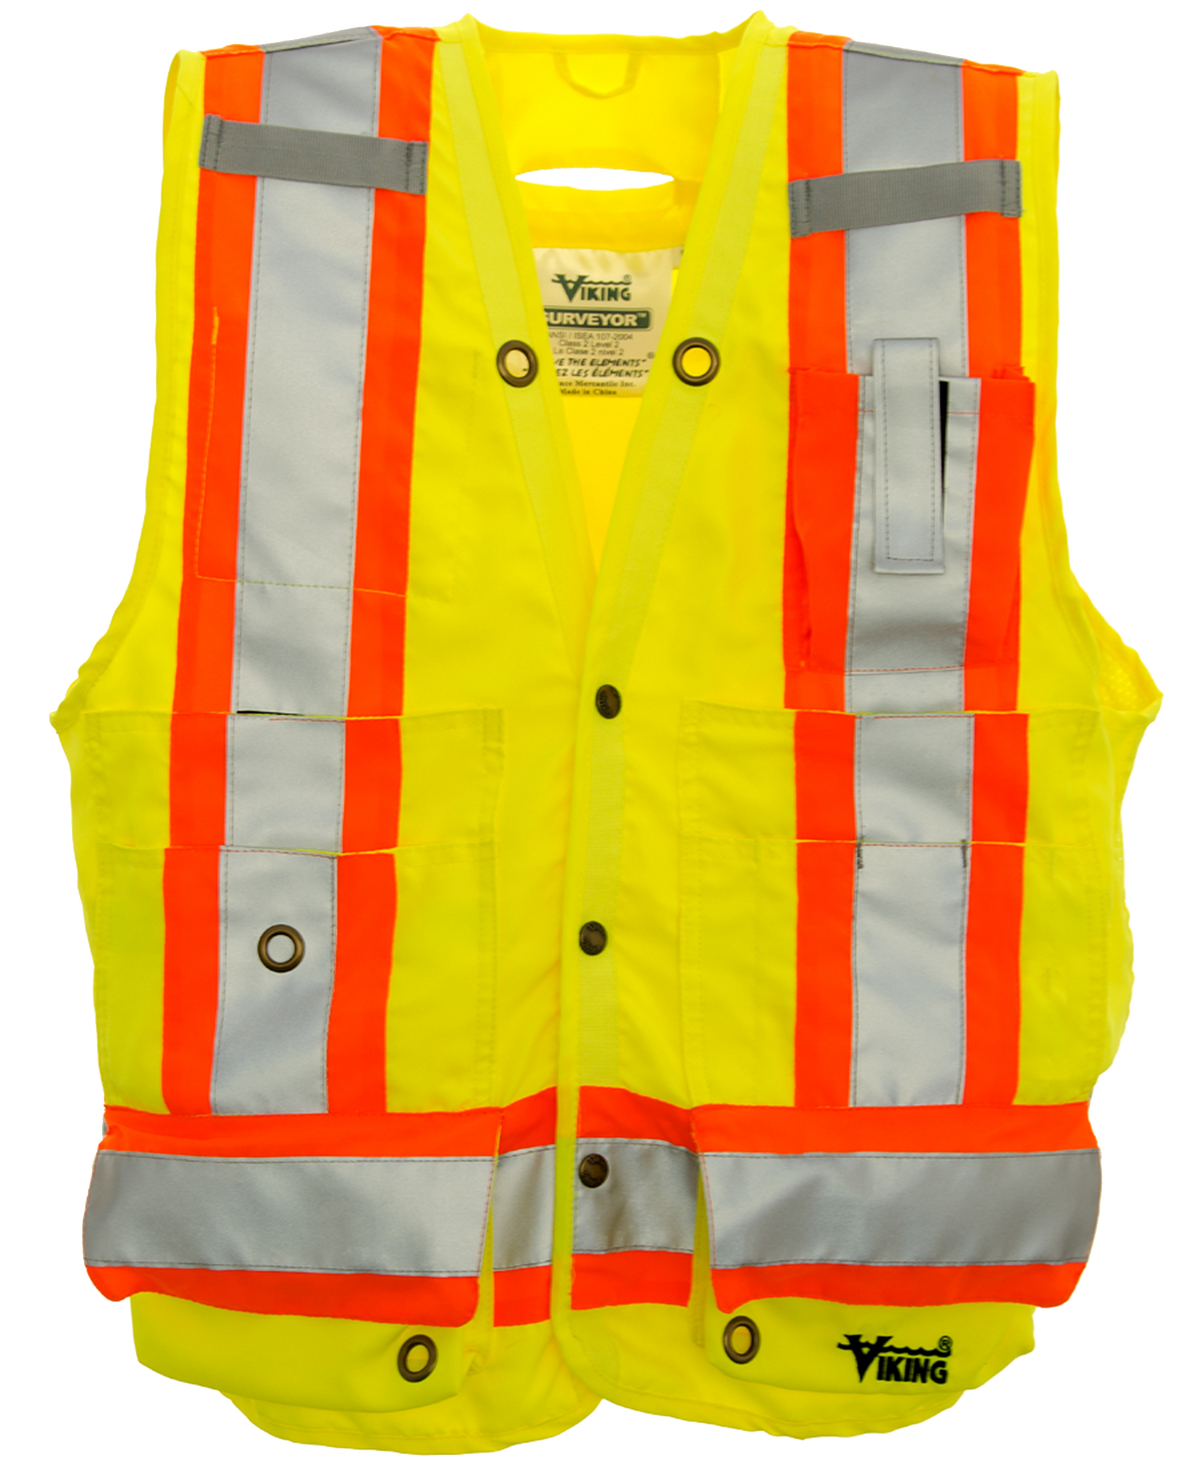 Viking Hi-Vis Surveyor Safety Vest - Work World - Workwear, Work Boots, Safety Gear